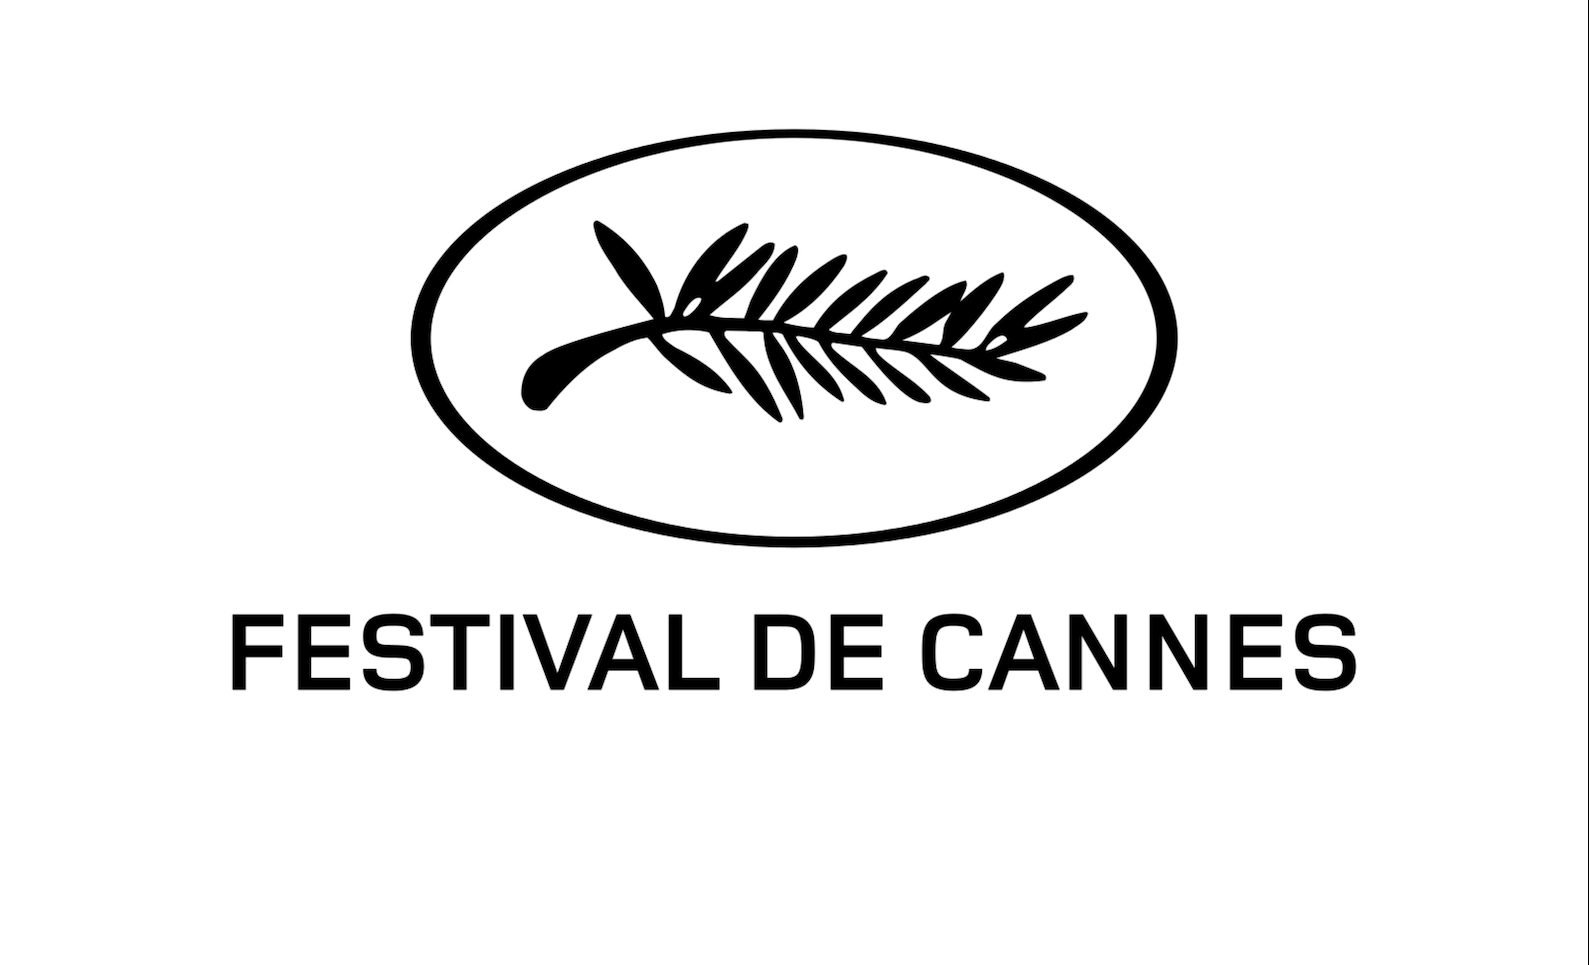 La Palme d'or du Festival de Cannes 2006 de nouveau décernée le dimanche soir…